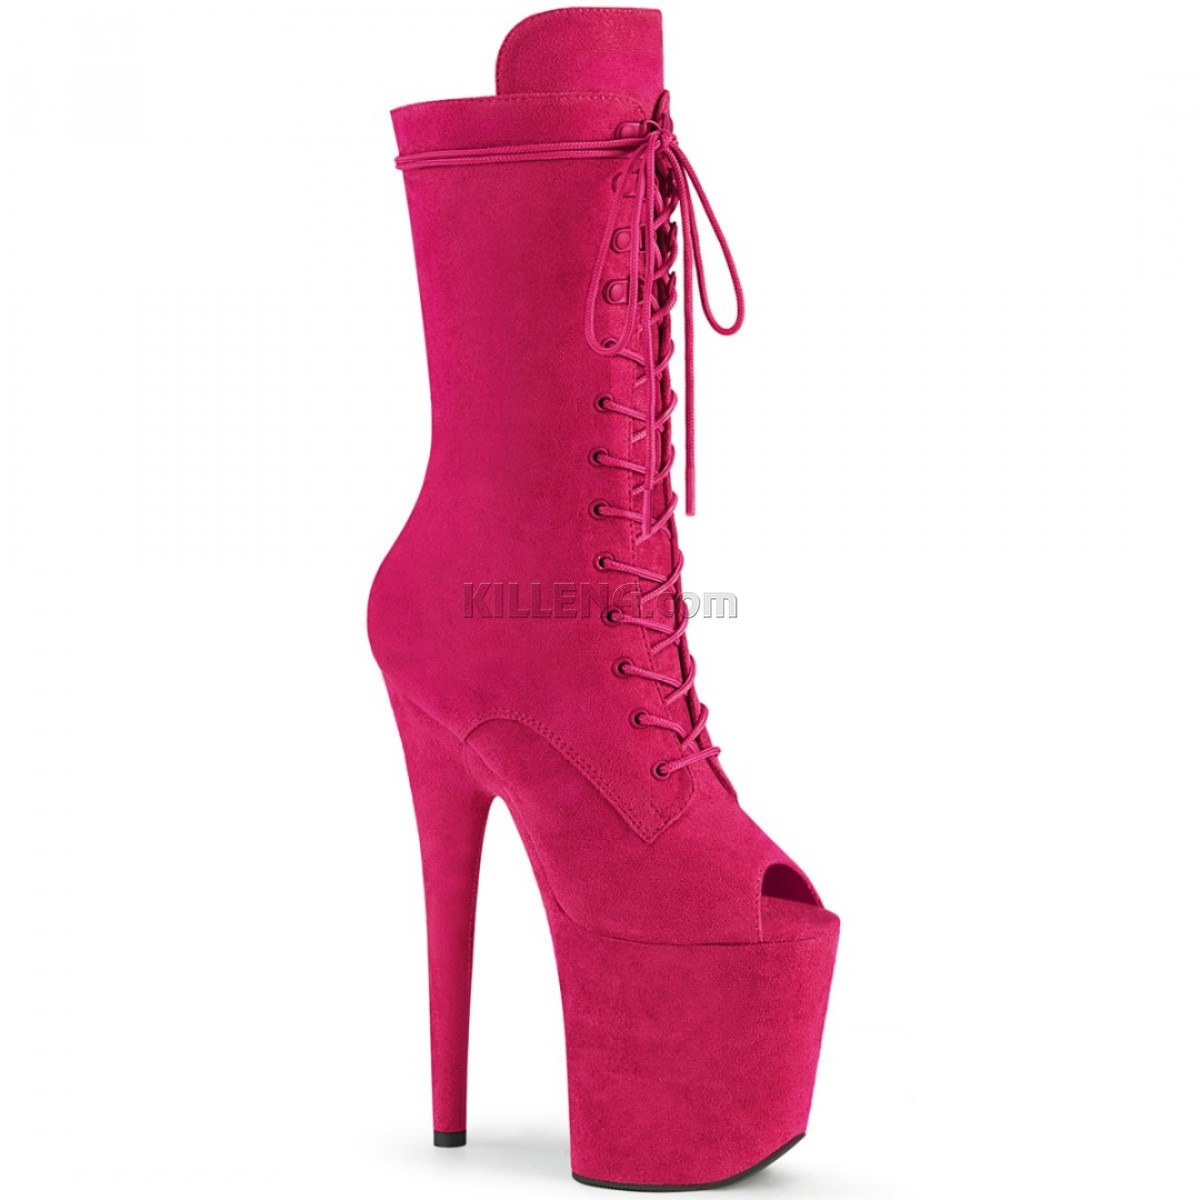 Високі яскраво-рожеві черевики з відкритим носком